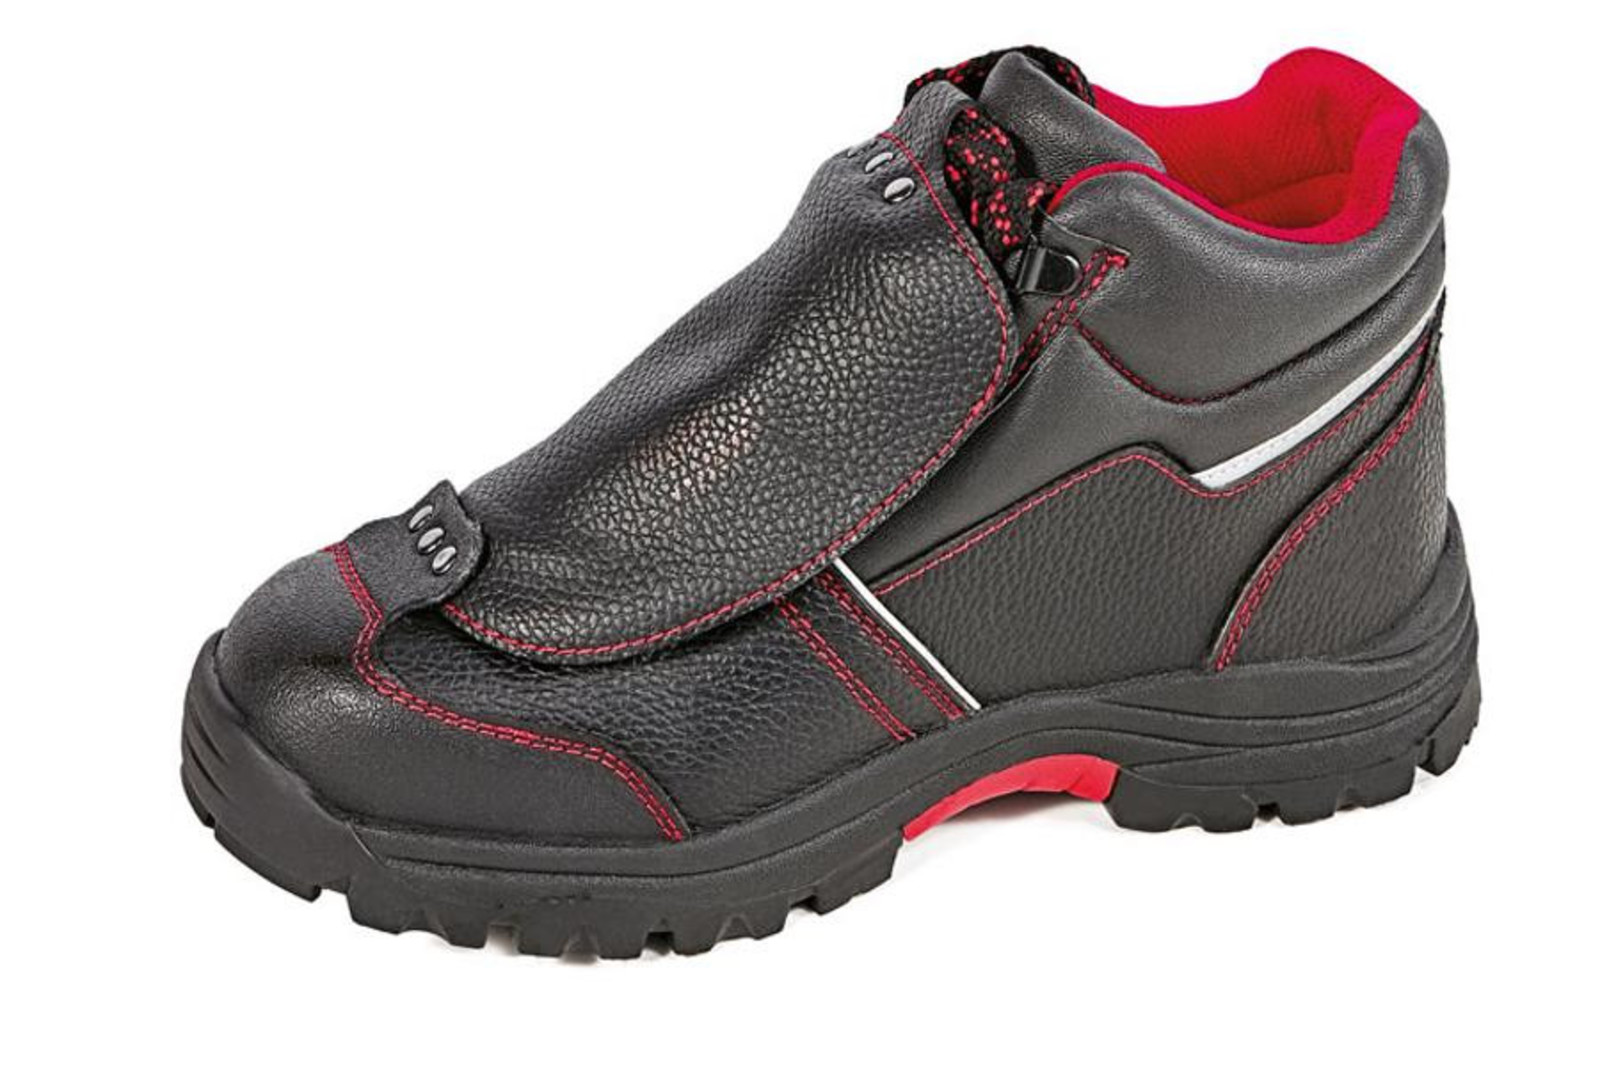 Bezpečnostná členková obuv Cerva Steeler Metatarsal S3 HRO M SRA  - veľkosť: 42, farba: čierna